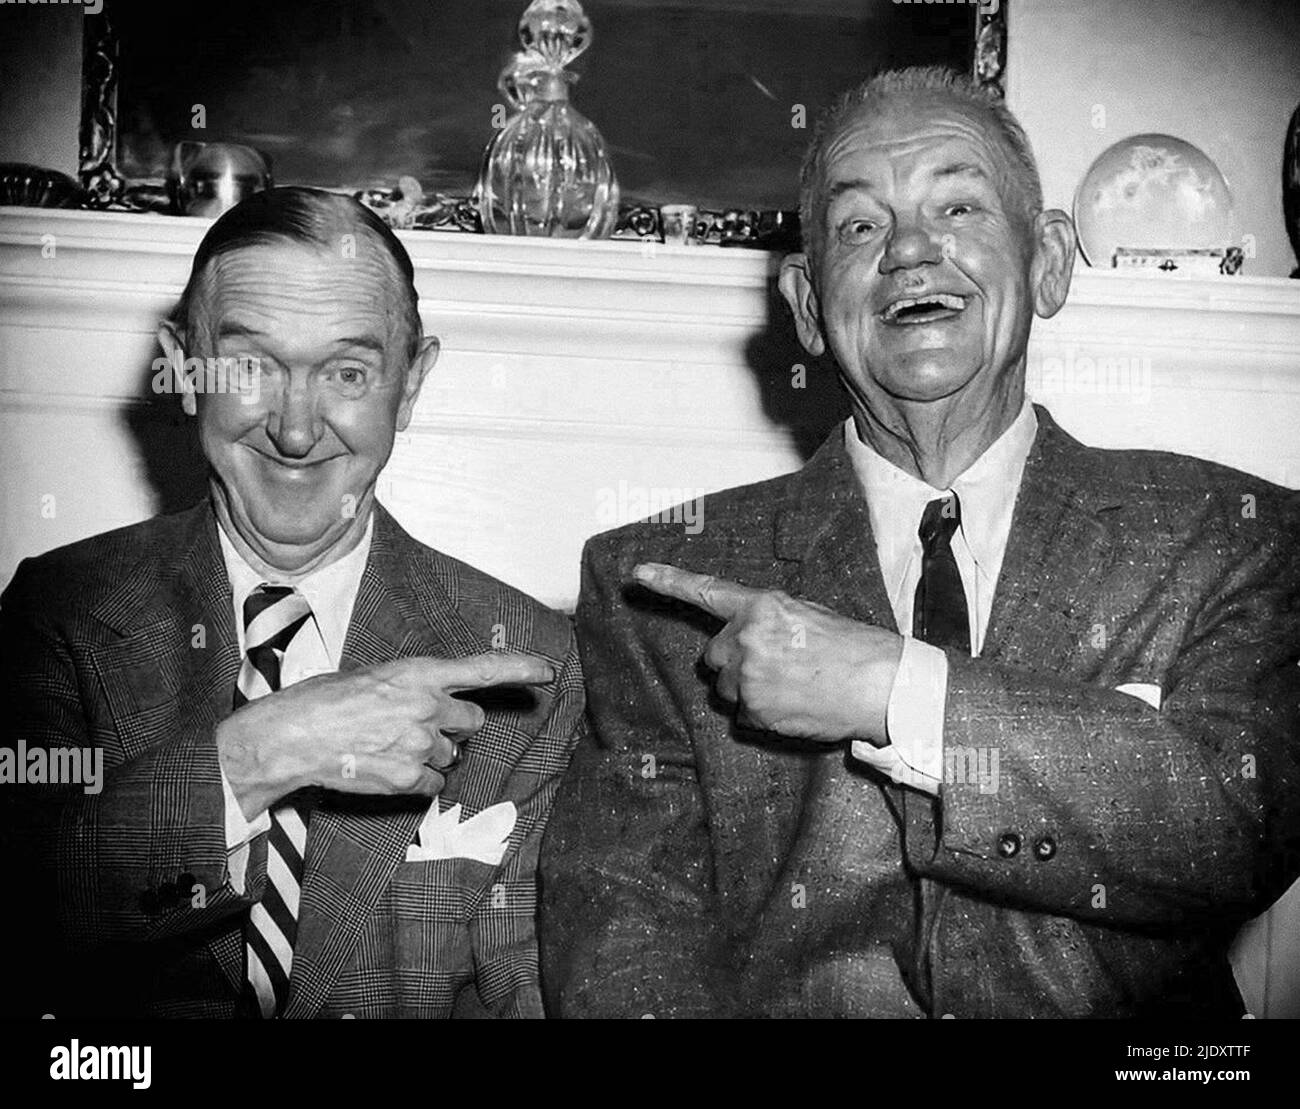 Ein Foto von Laurel und Hardy im Alter. Oliver Hardy (rechts) hat aufgrund des Krebses, gegen den er damals kämpfte, viel Gewicht verloren. Stockfoto